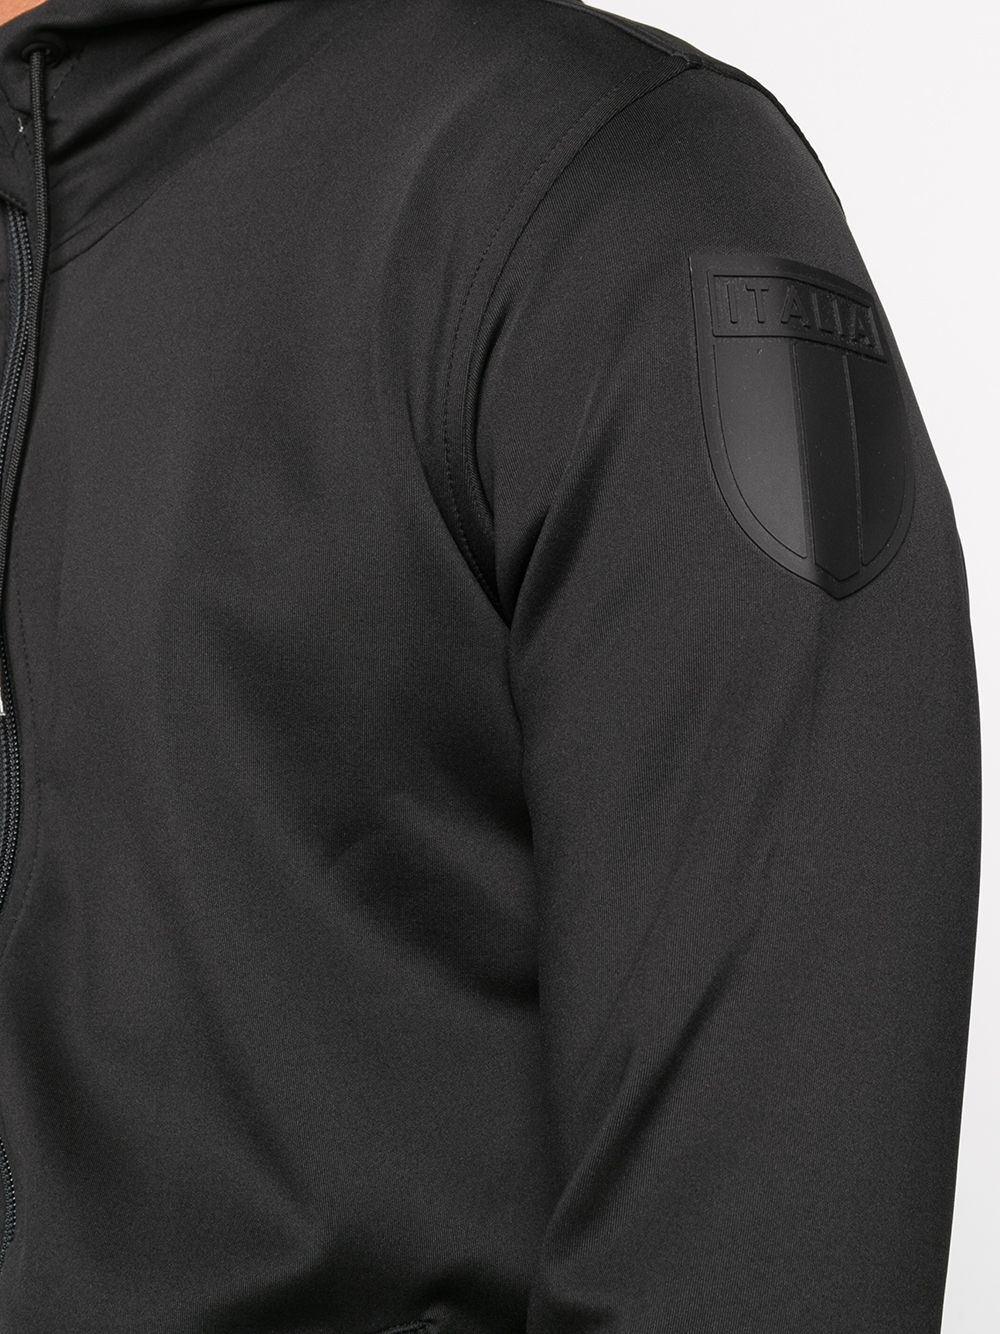 фото Hydrogen куртка с капюшоном и контрастной подкладкой